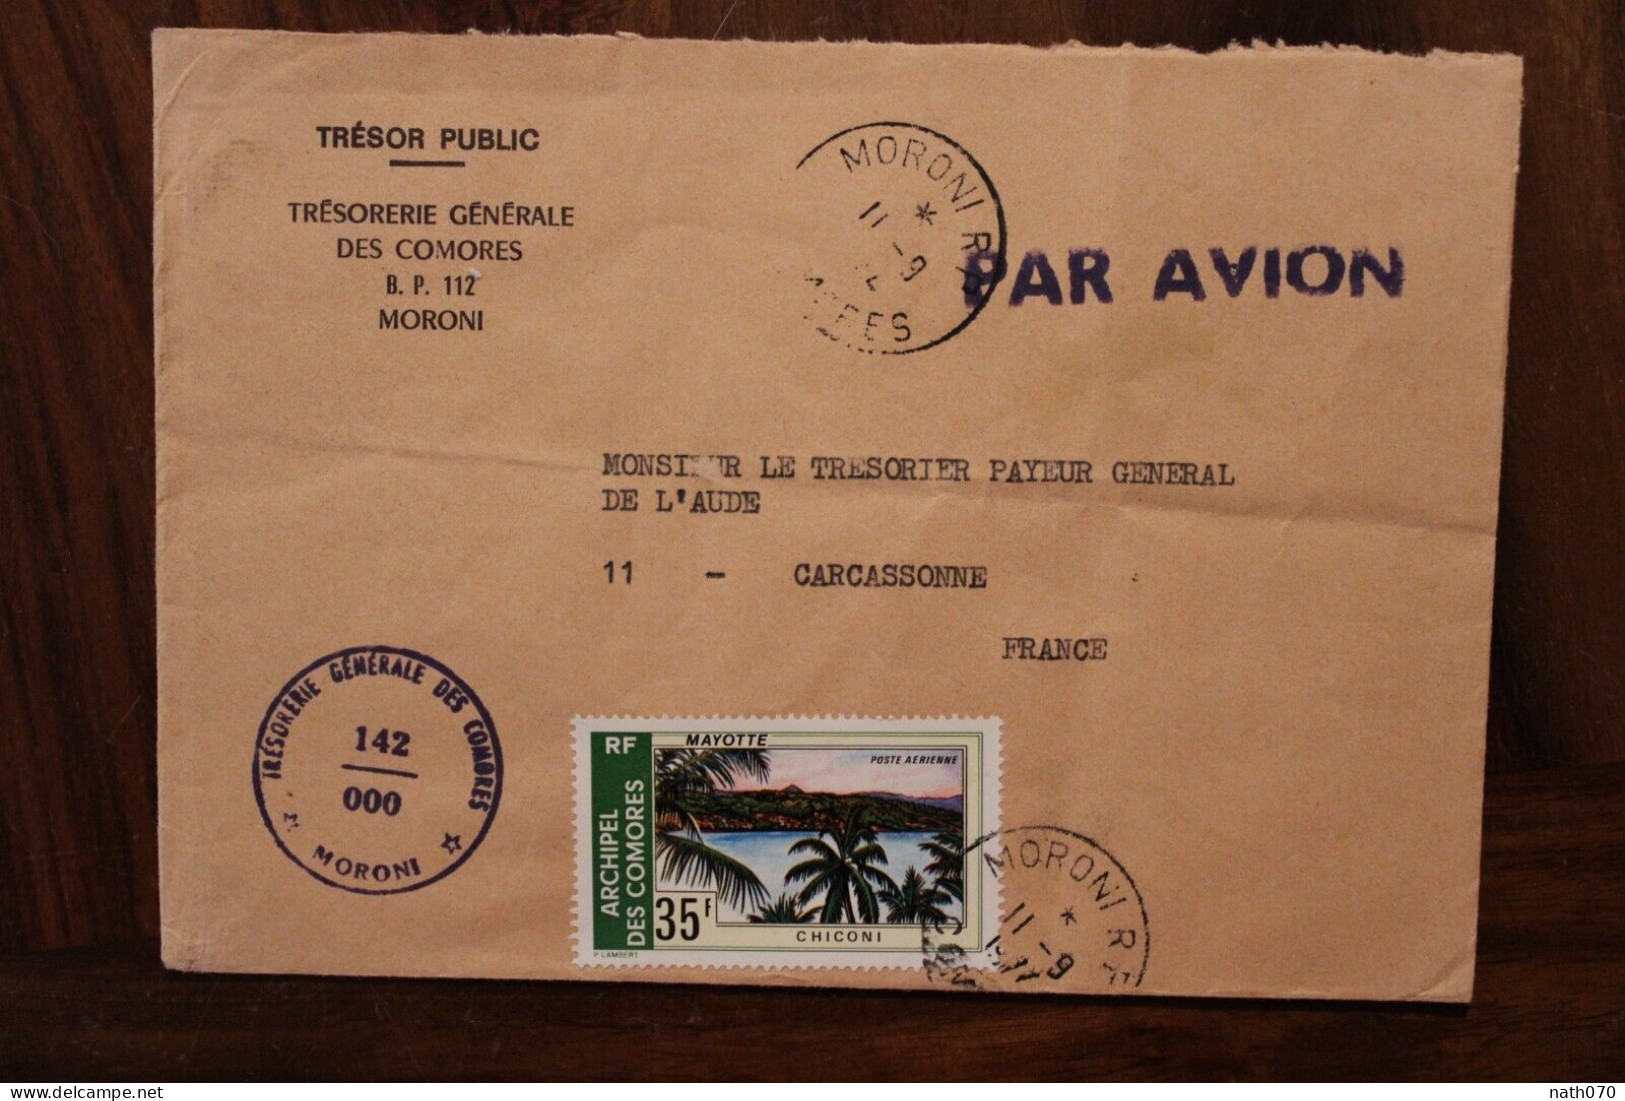 1977 Comores Trésorerie Générale Pour France Carcassonne Cover Air Mail Poste Aerienne Par Avion Timbre Mayotte - Isole Comore (1975-...)